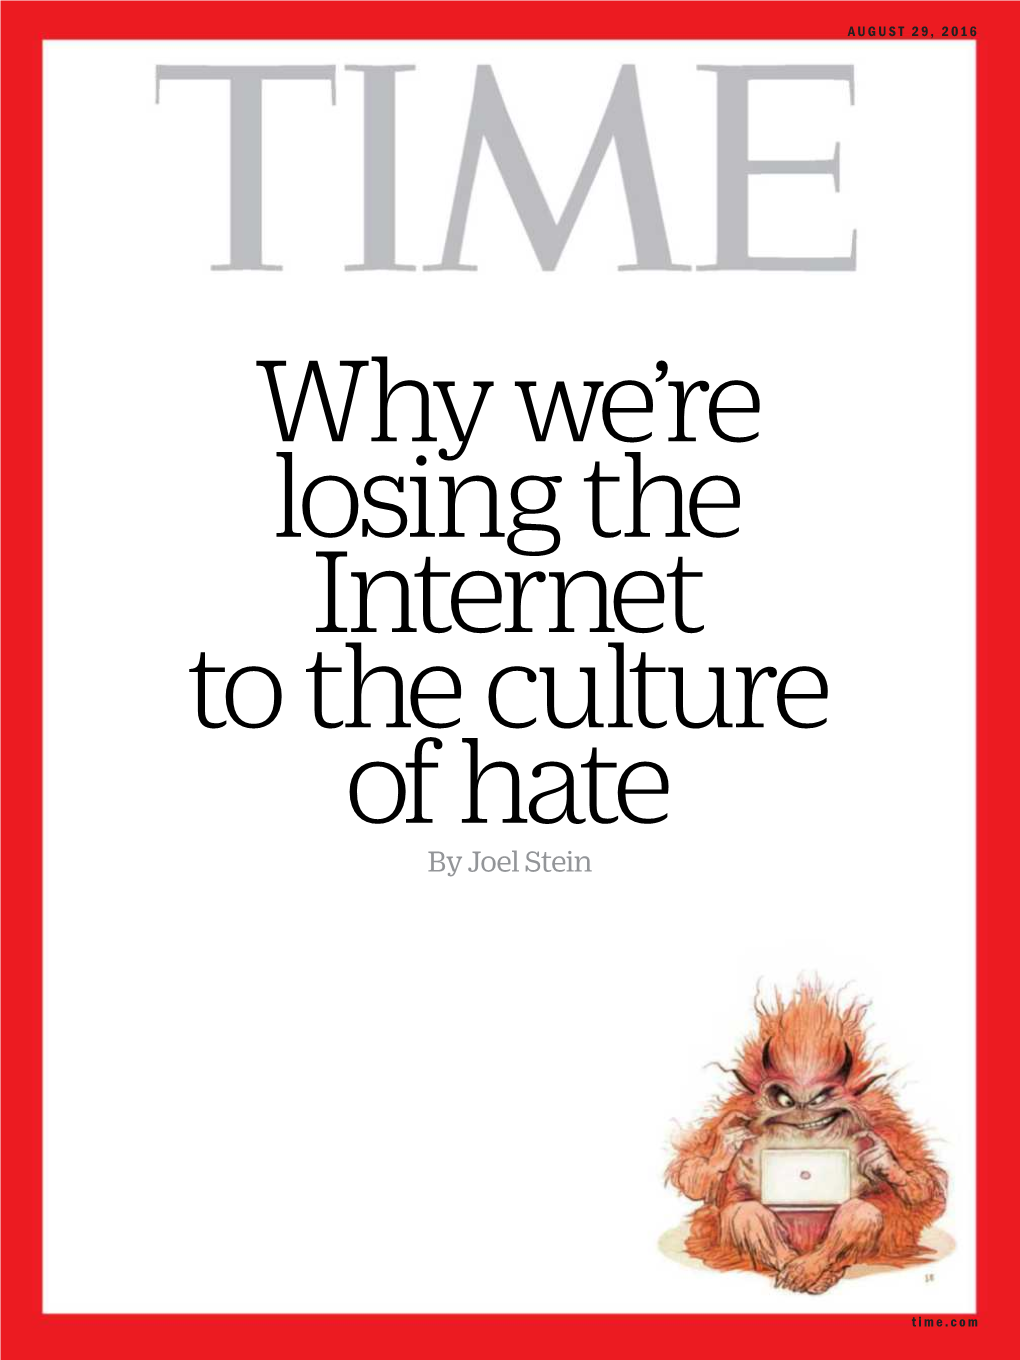 TIME Magazine, P.O